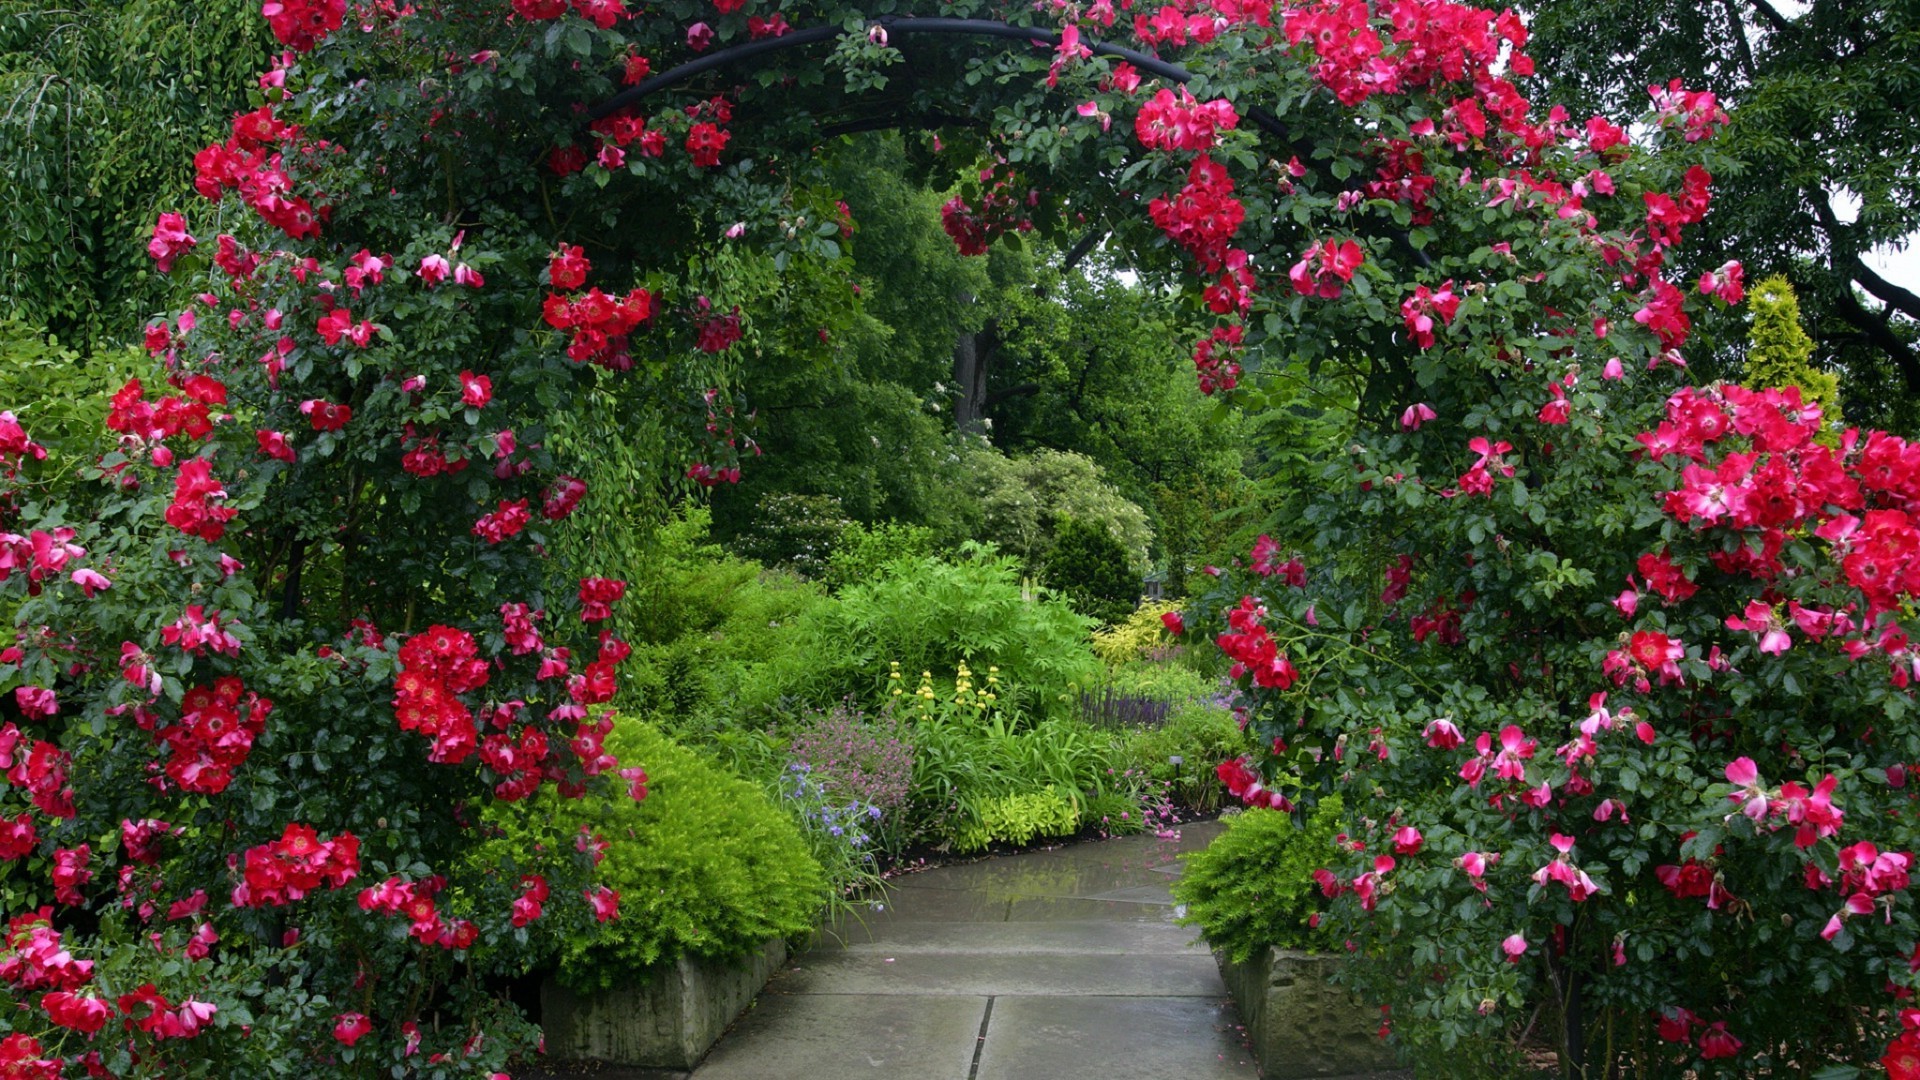 сады цветок сад флора кустарник лето природа рододендрон лист рост блюминг на открытом воздухе герань ботанический дерево роза сезон клумба